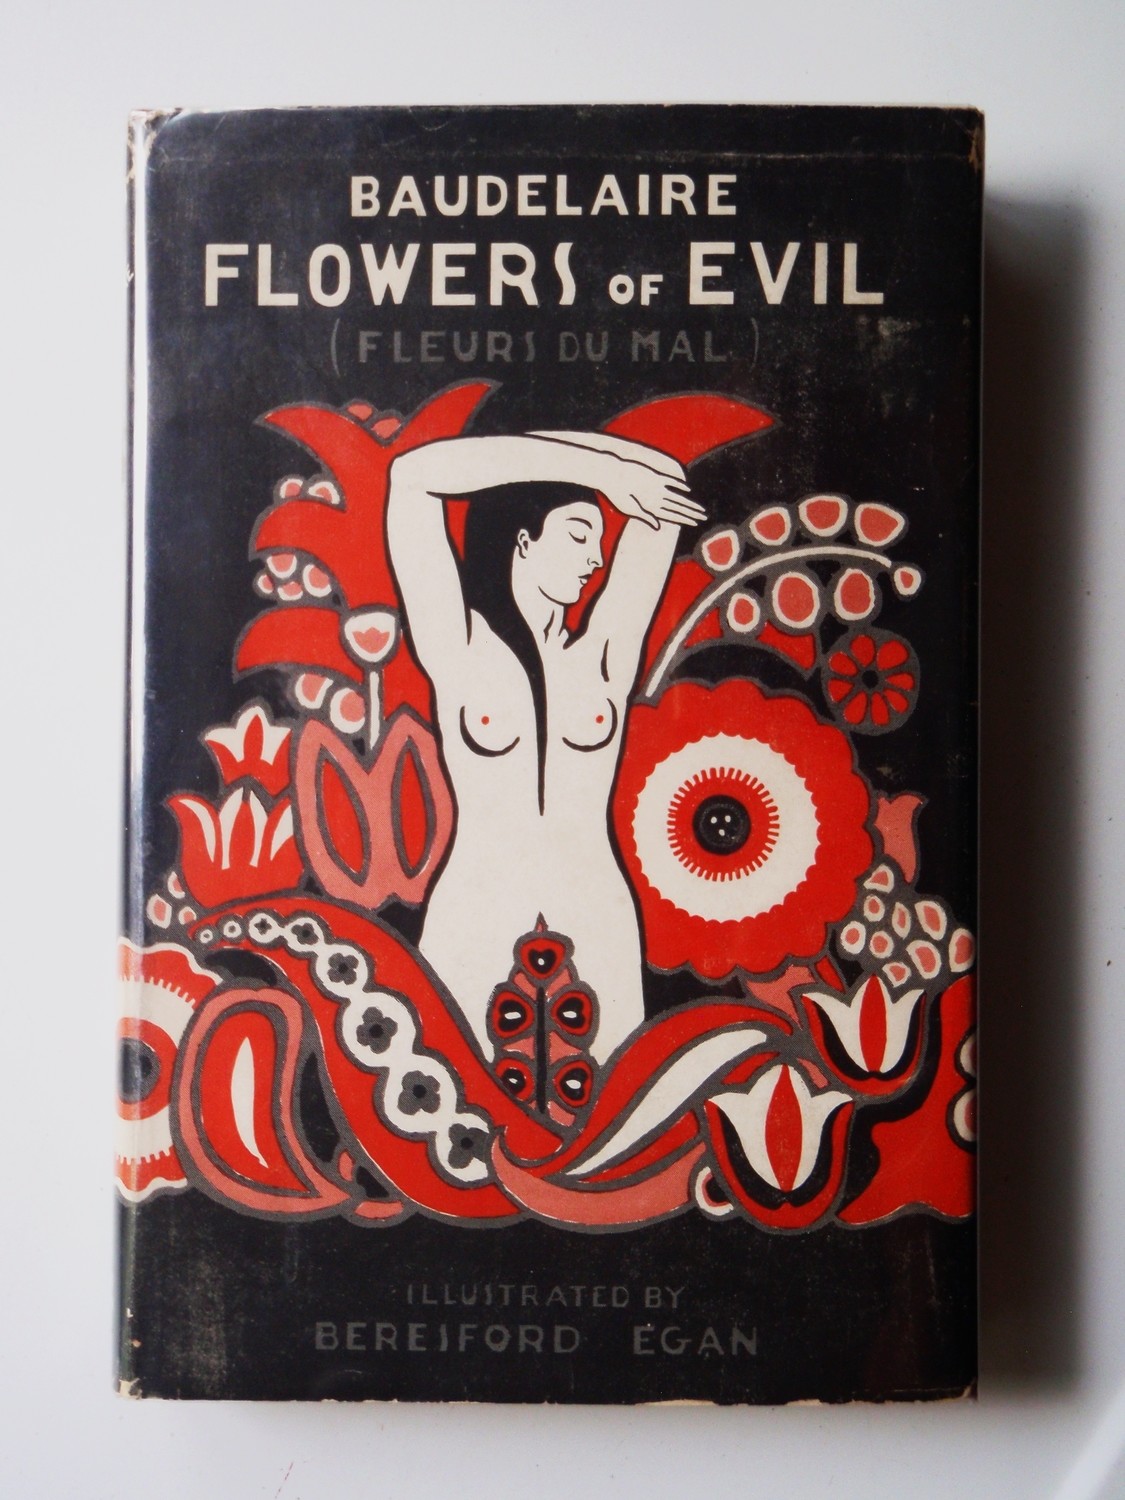 Baudelaire Flowers of Evil 1933 Beresford Egan Art Deco Illustration Ltd 1st Ed